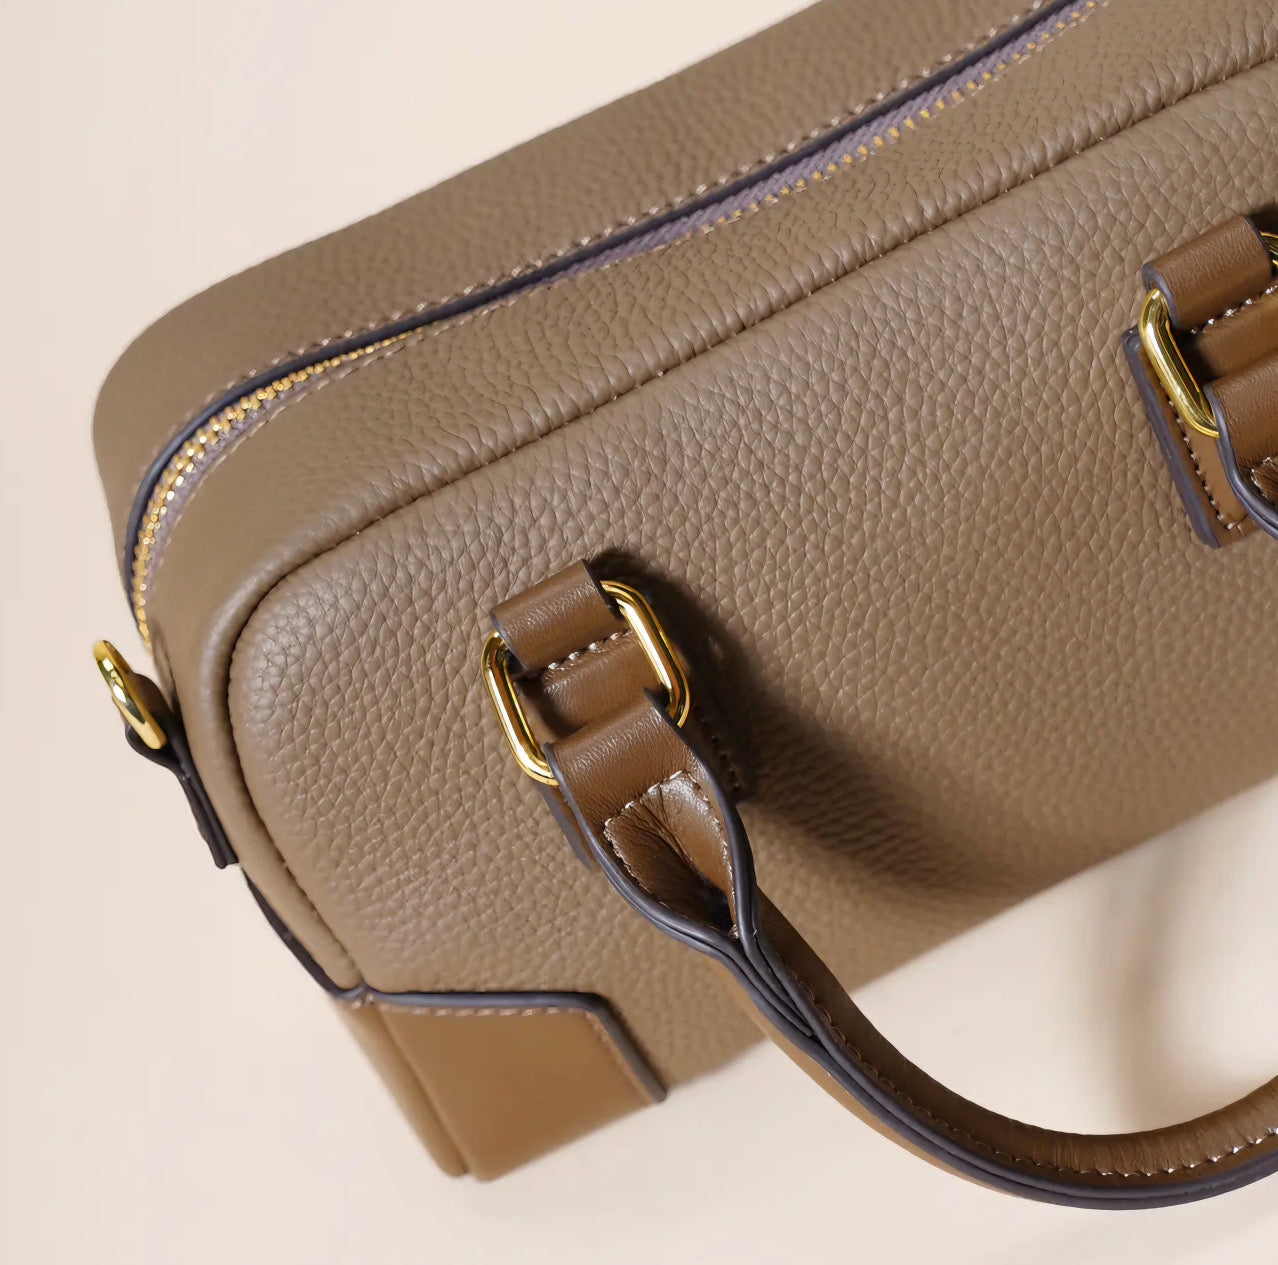 Bostonian Stylish Minimalist Handbag